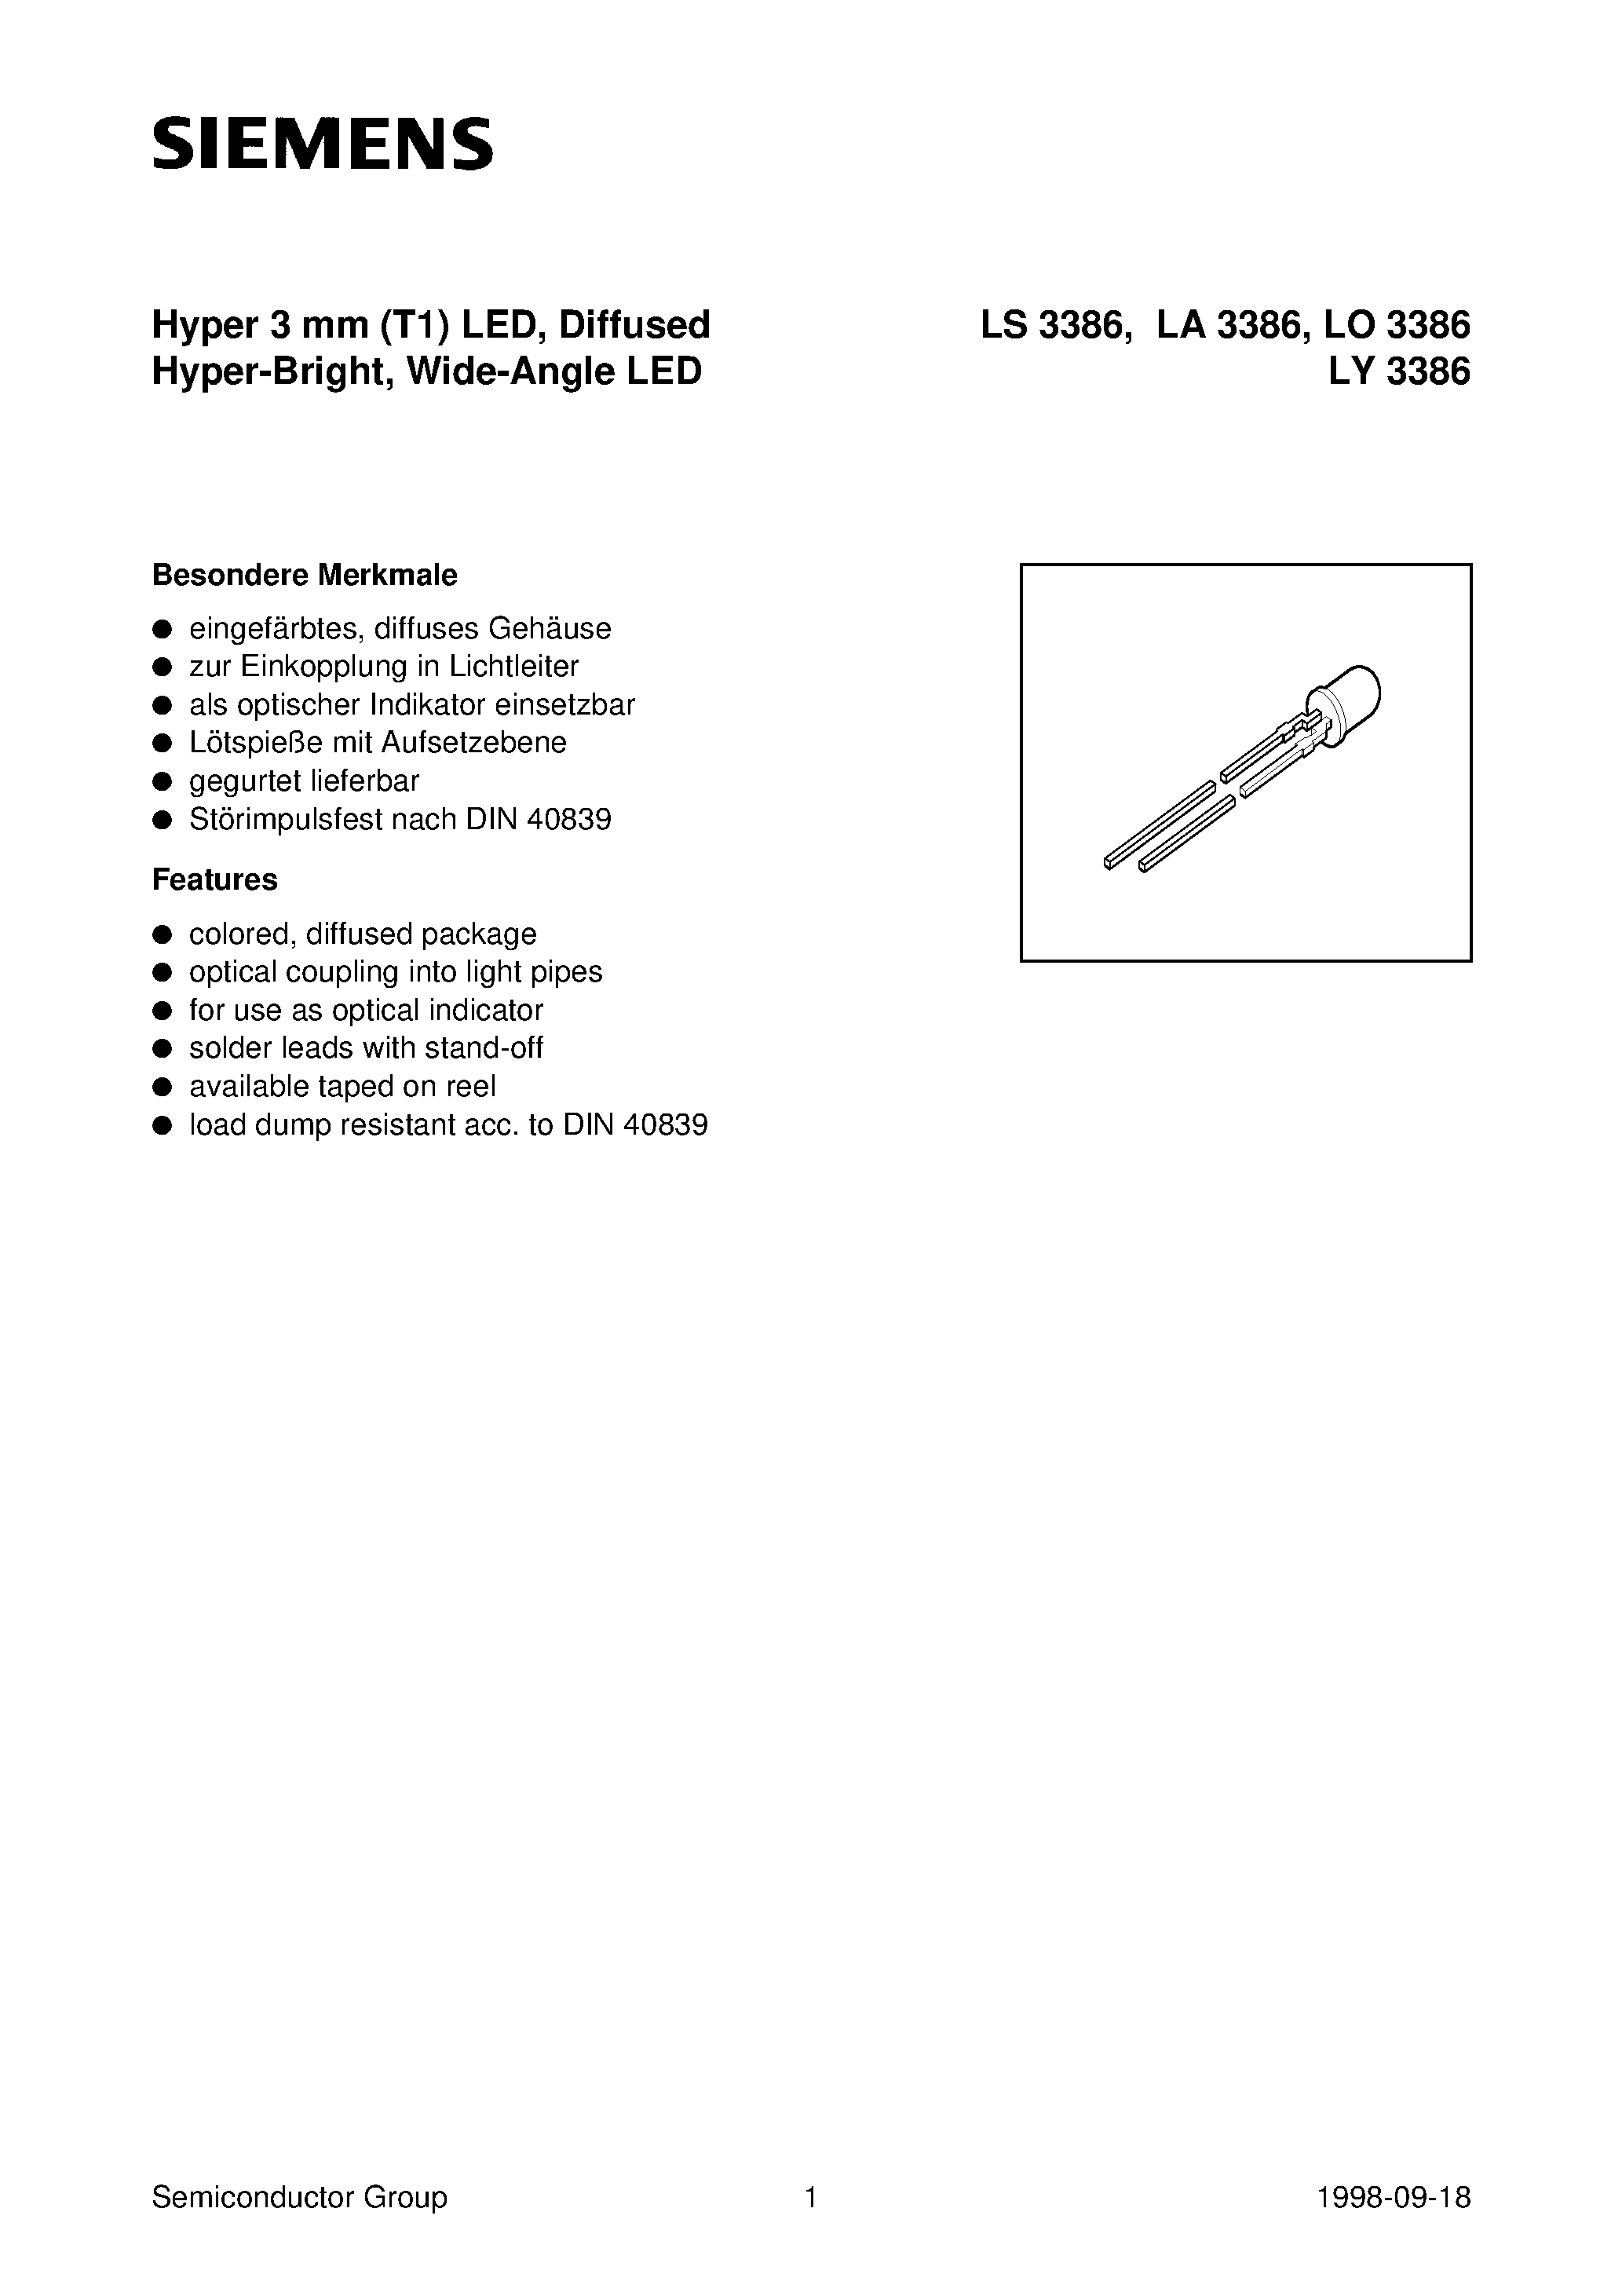 Даташит LS3386-N - Hyper 3 mm T1 LED / Diffused Hyper-Bright / Wide-Angle LED страница 1